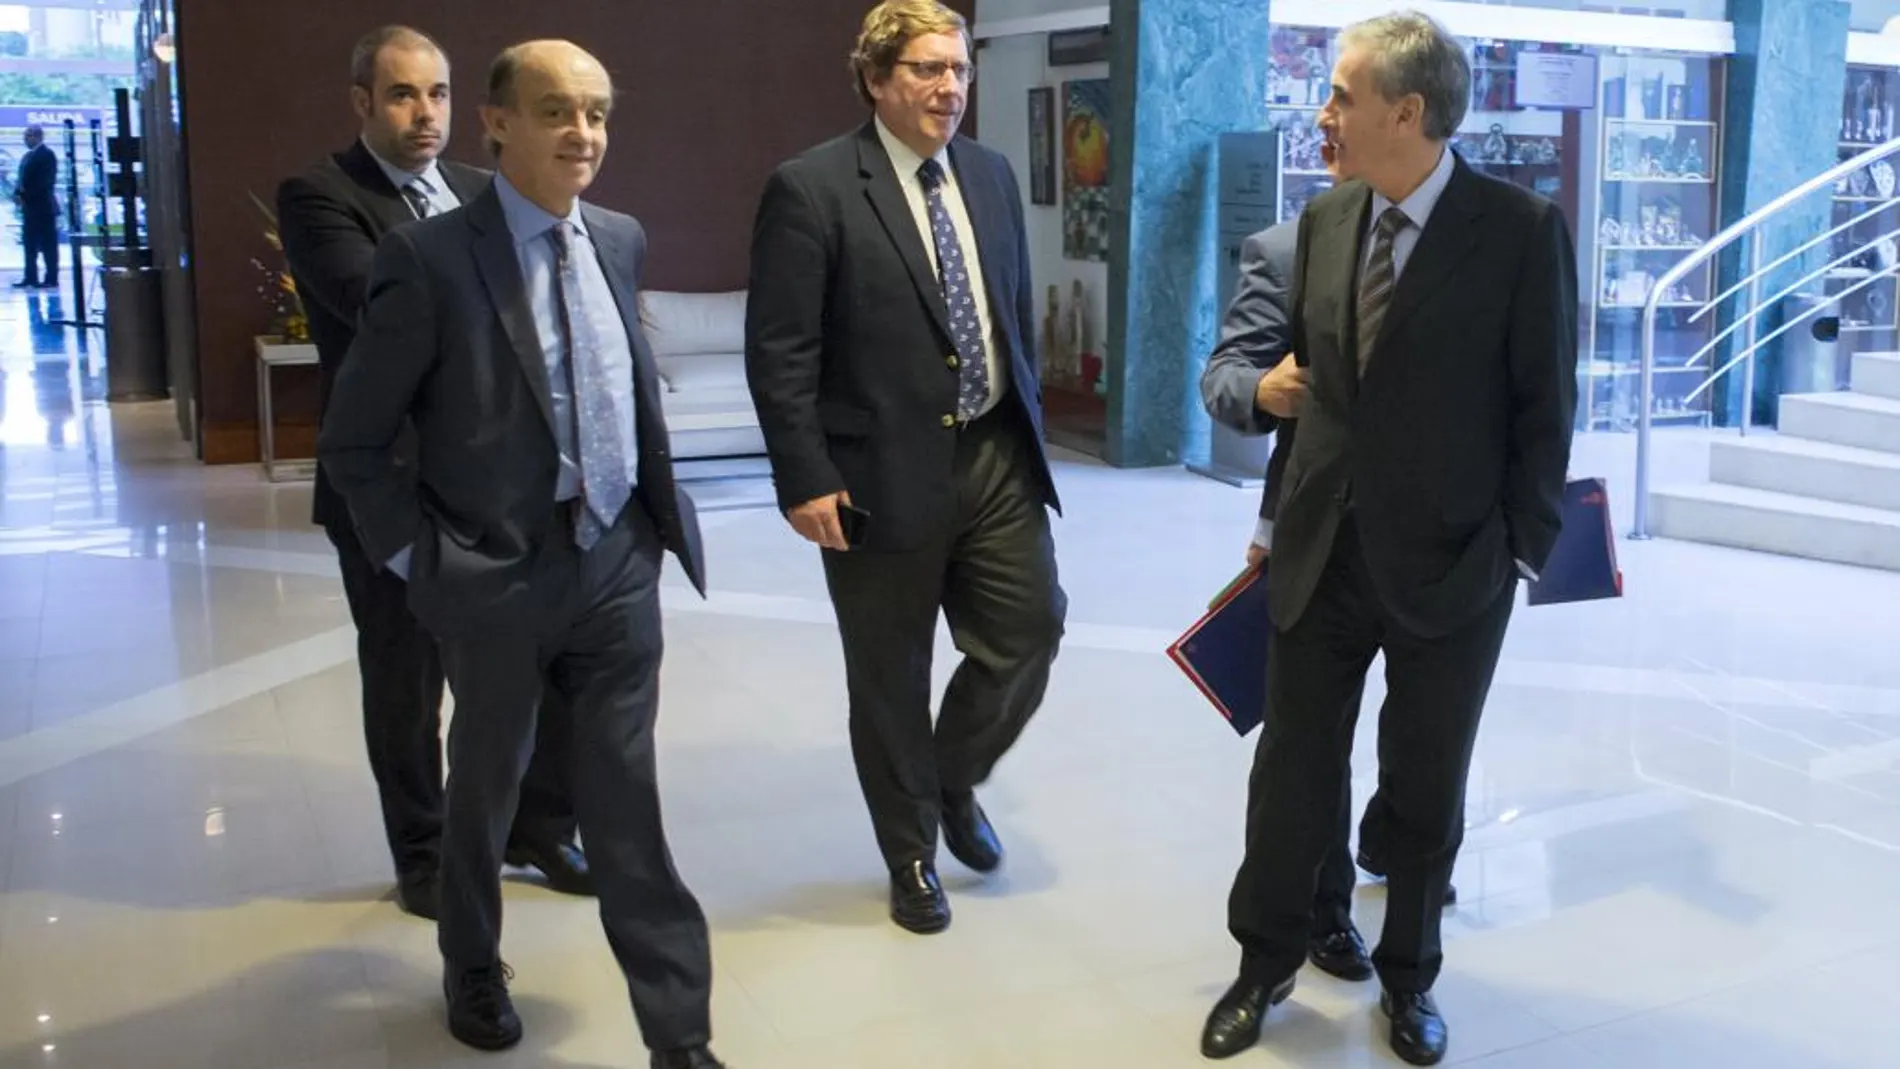 Los eurodiputados Fernando Maura (i), Gabriel Mato (c) y Ramón Jáuregi (d) llegan para una reunión en Caracas